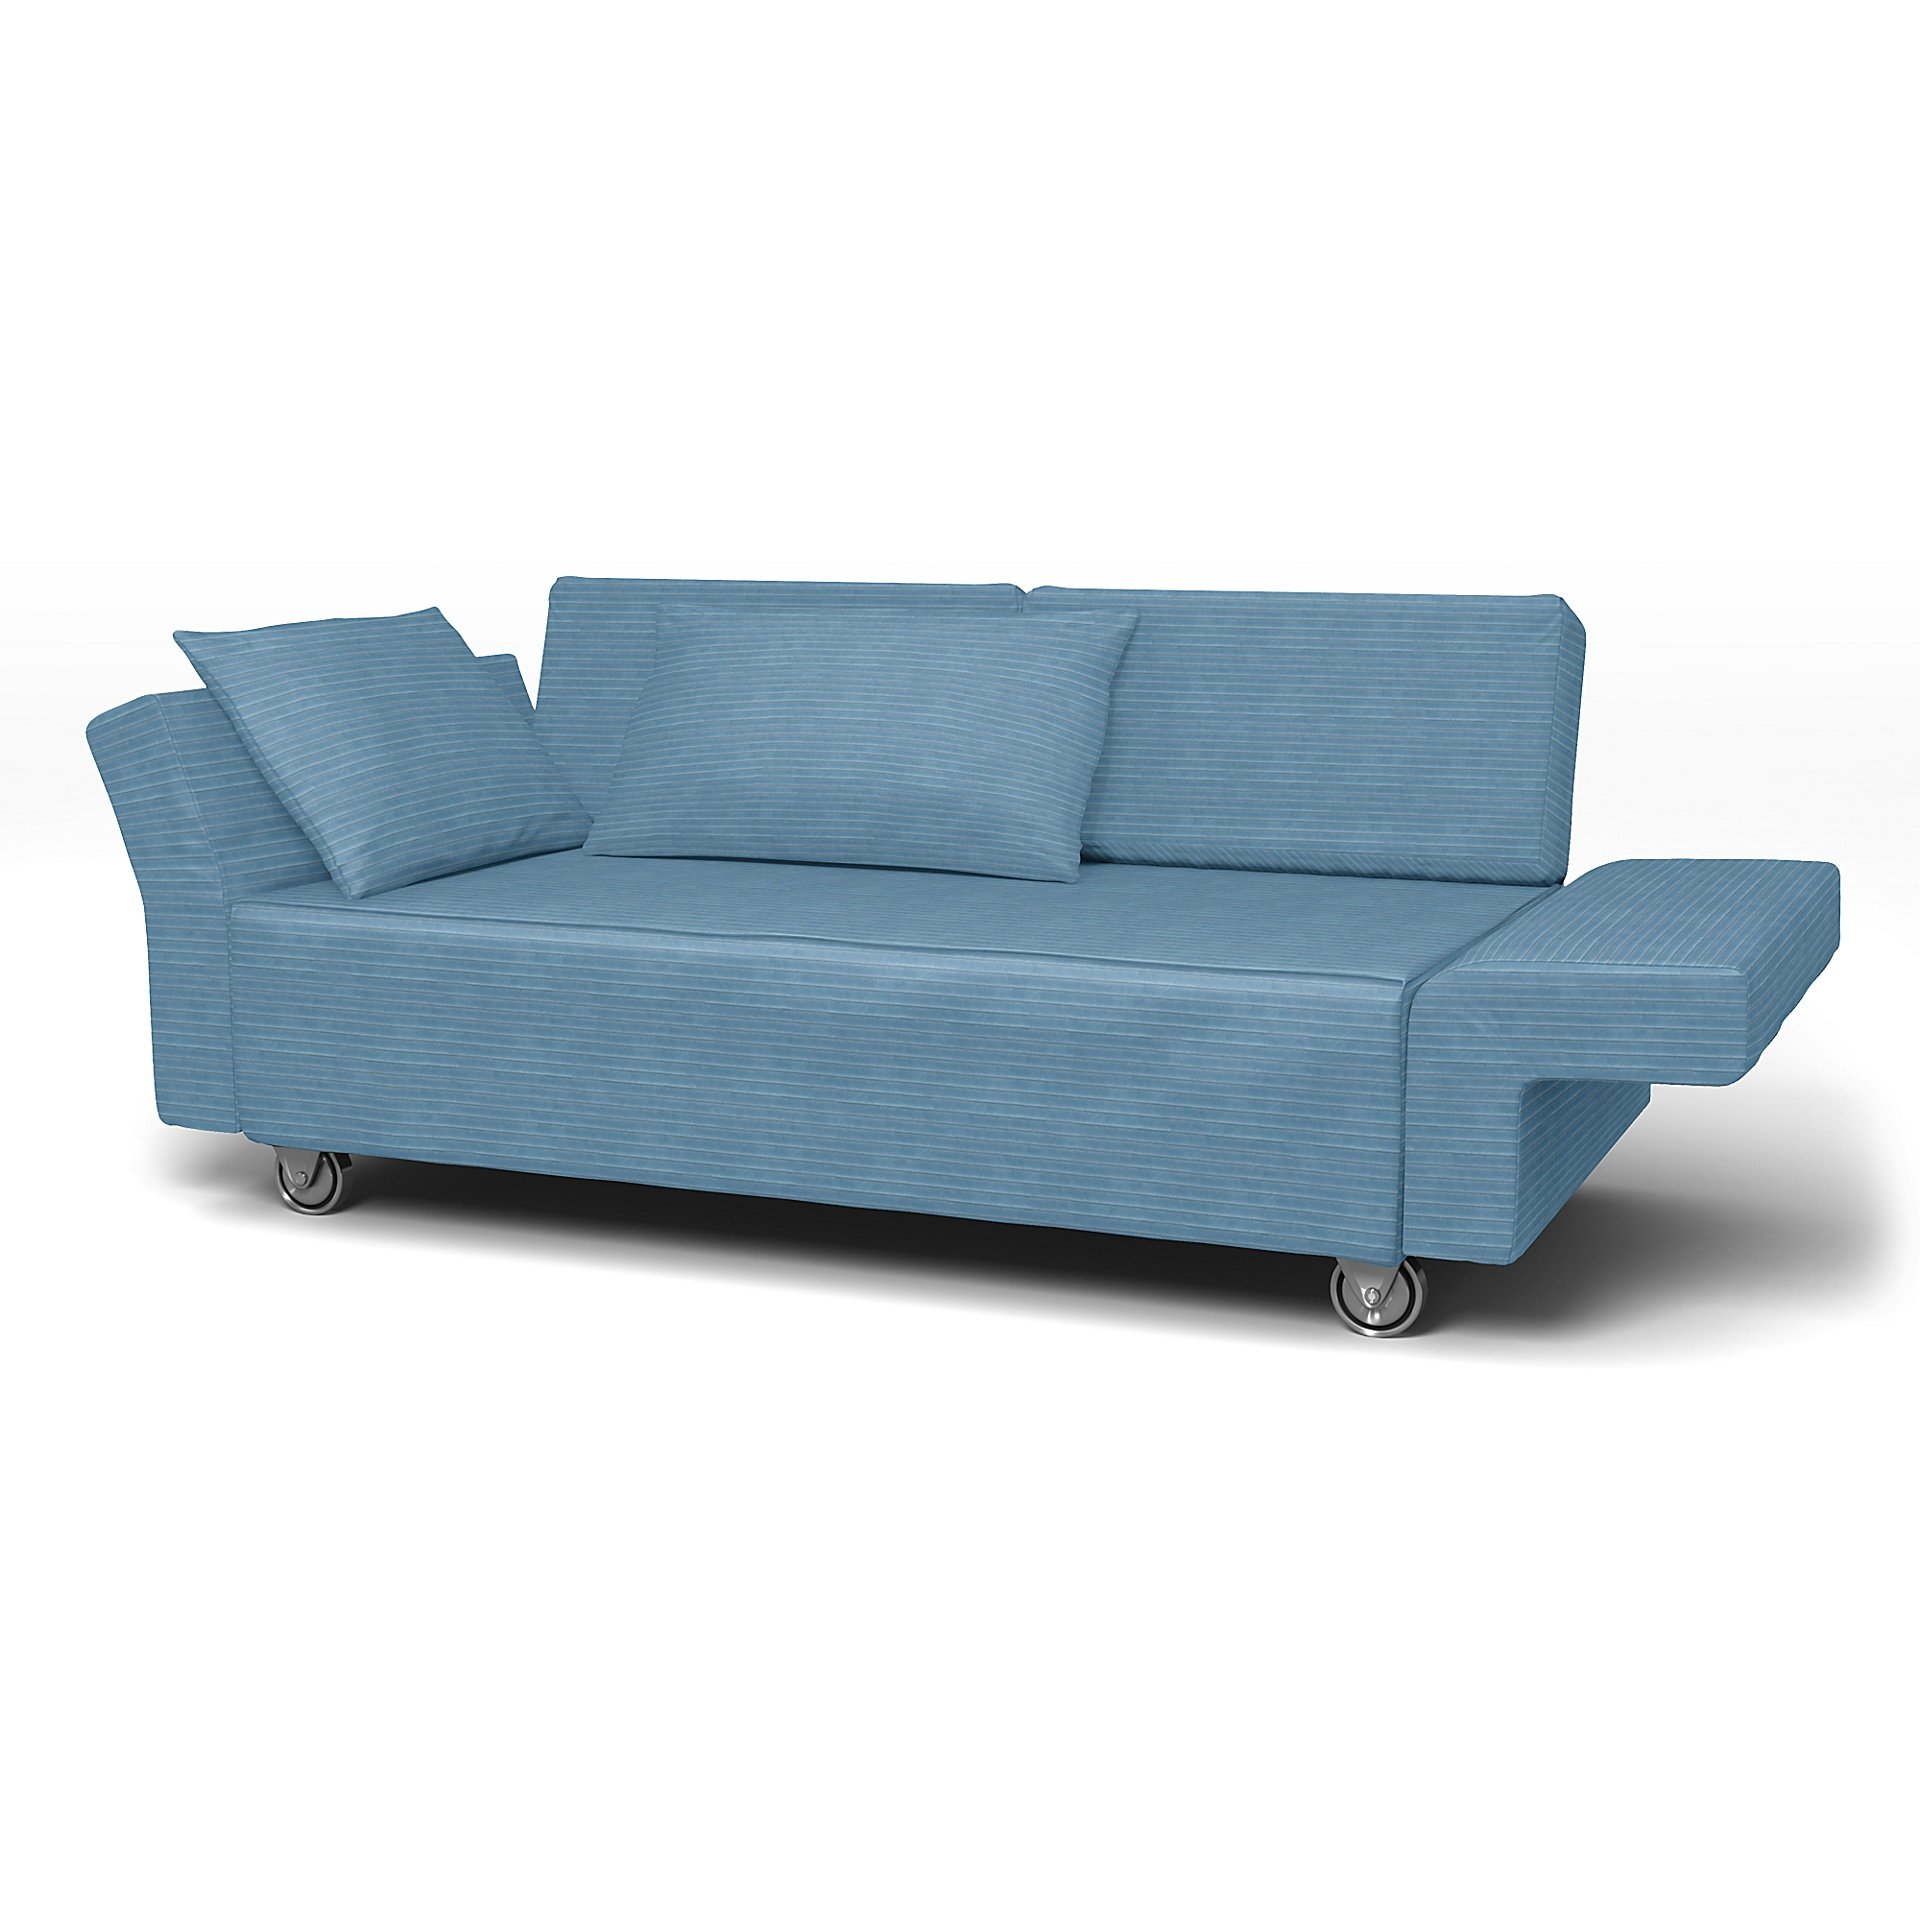 IKEA - Falsterbo 2 Seater Sofa Cover, Sky Blue, Corduroy - Bemz